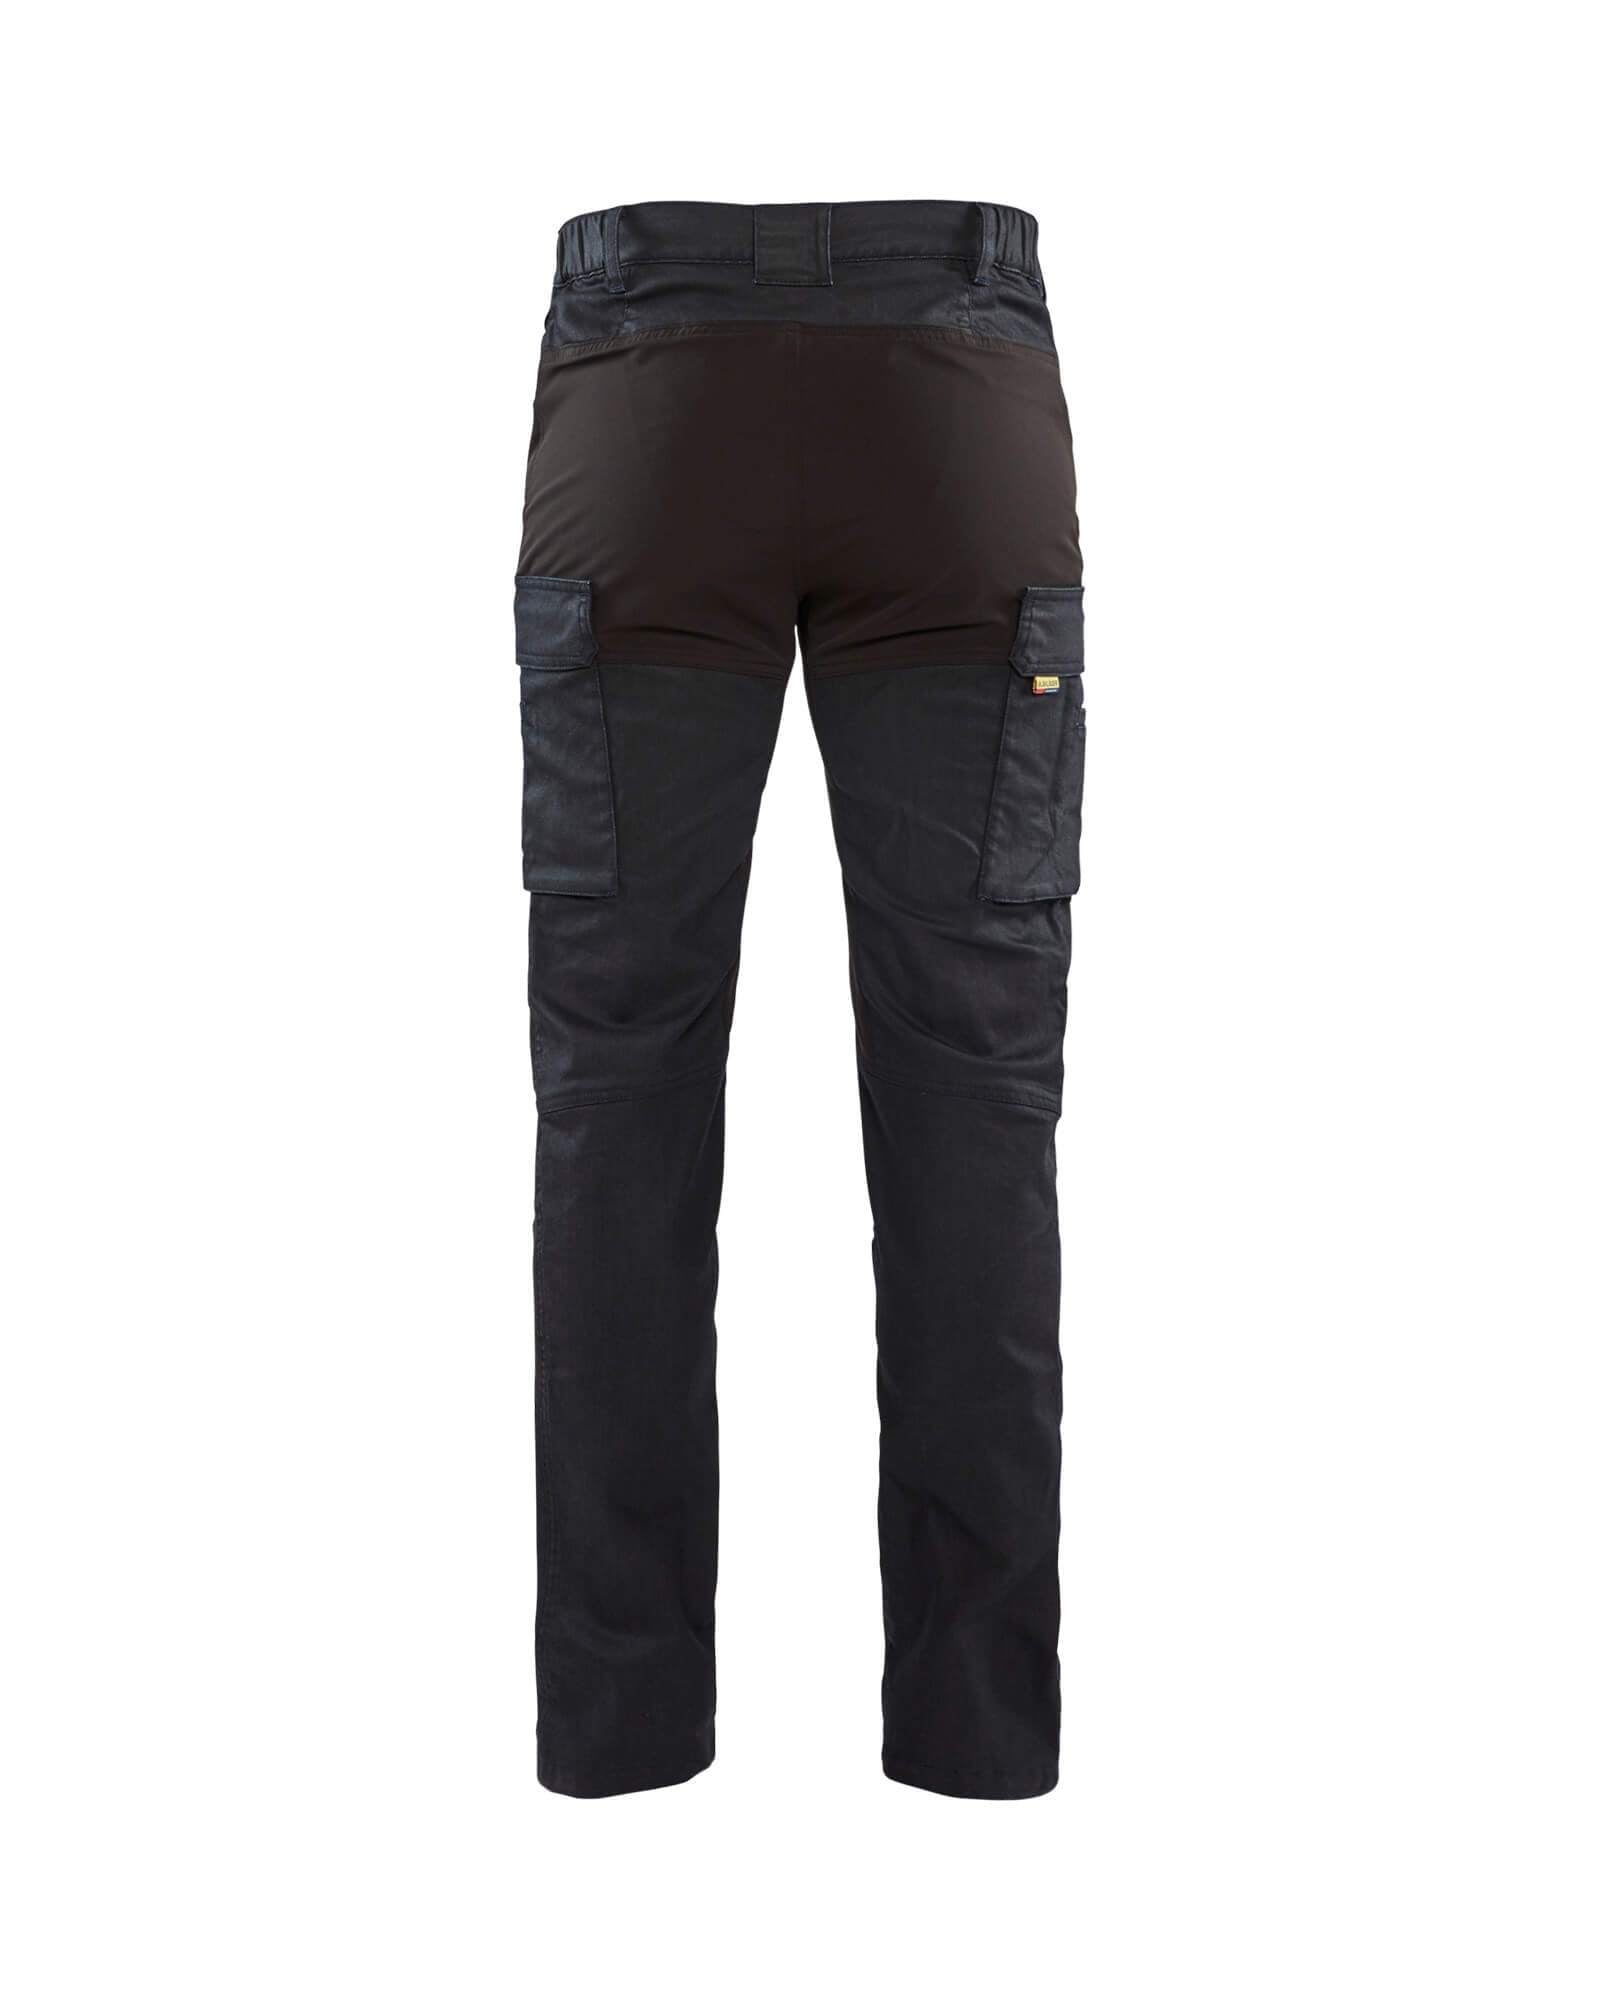 DEWALT Harrison 31 Leg 32W Slim Fit Work Trousers - Black/Grey for sale  online | eBay